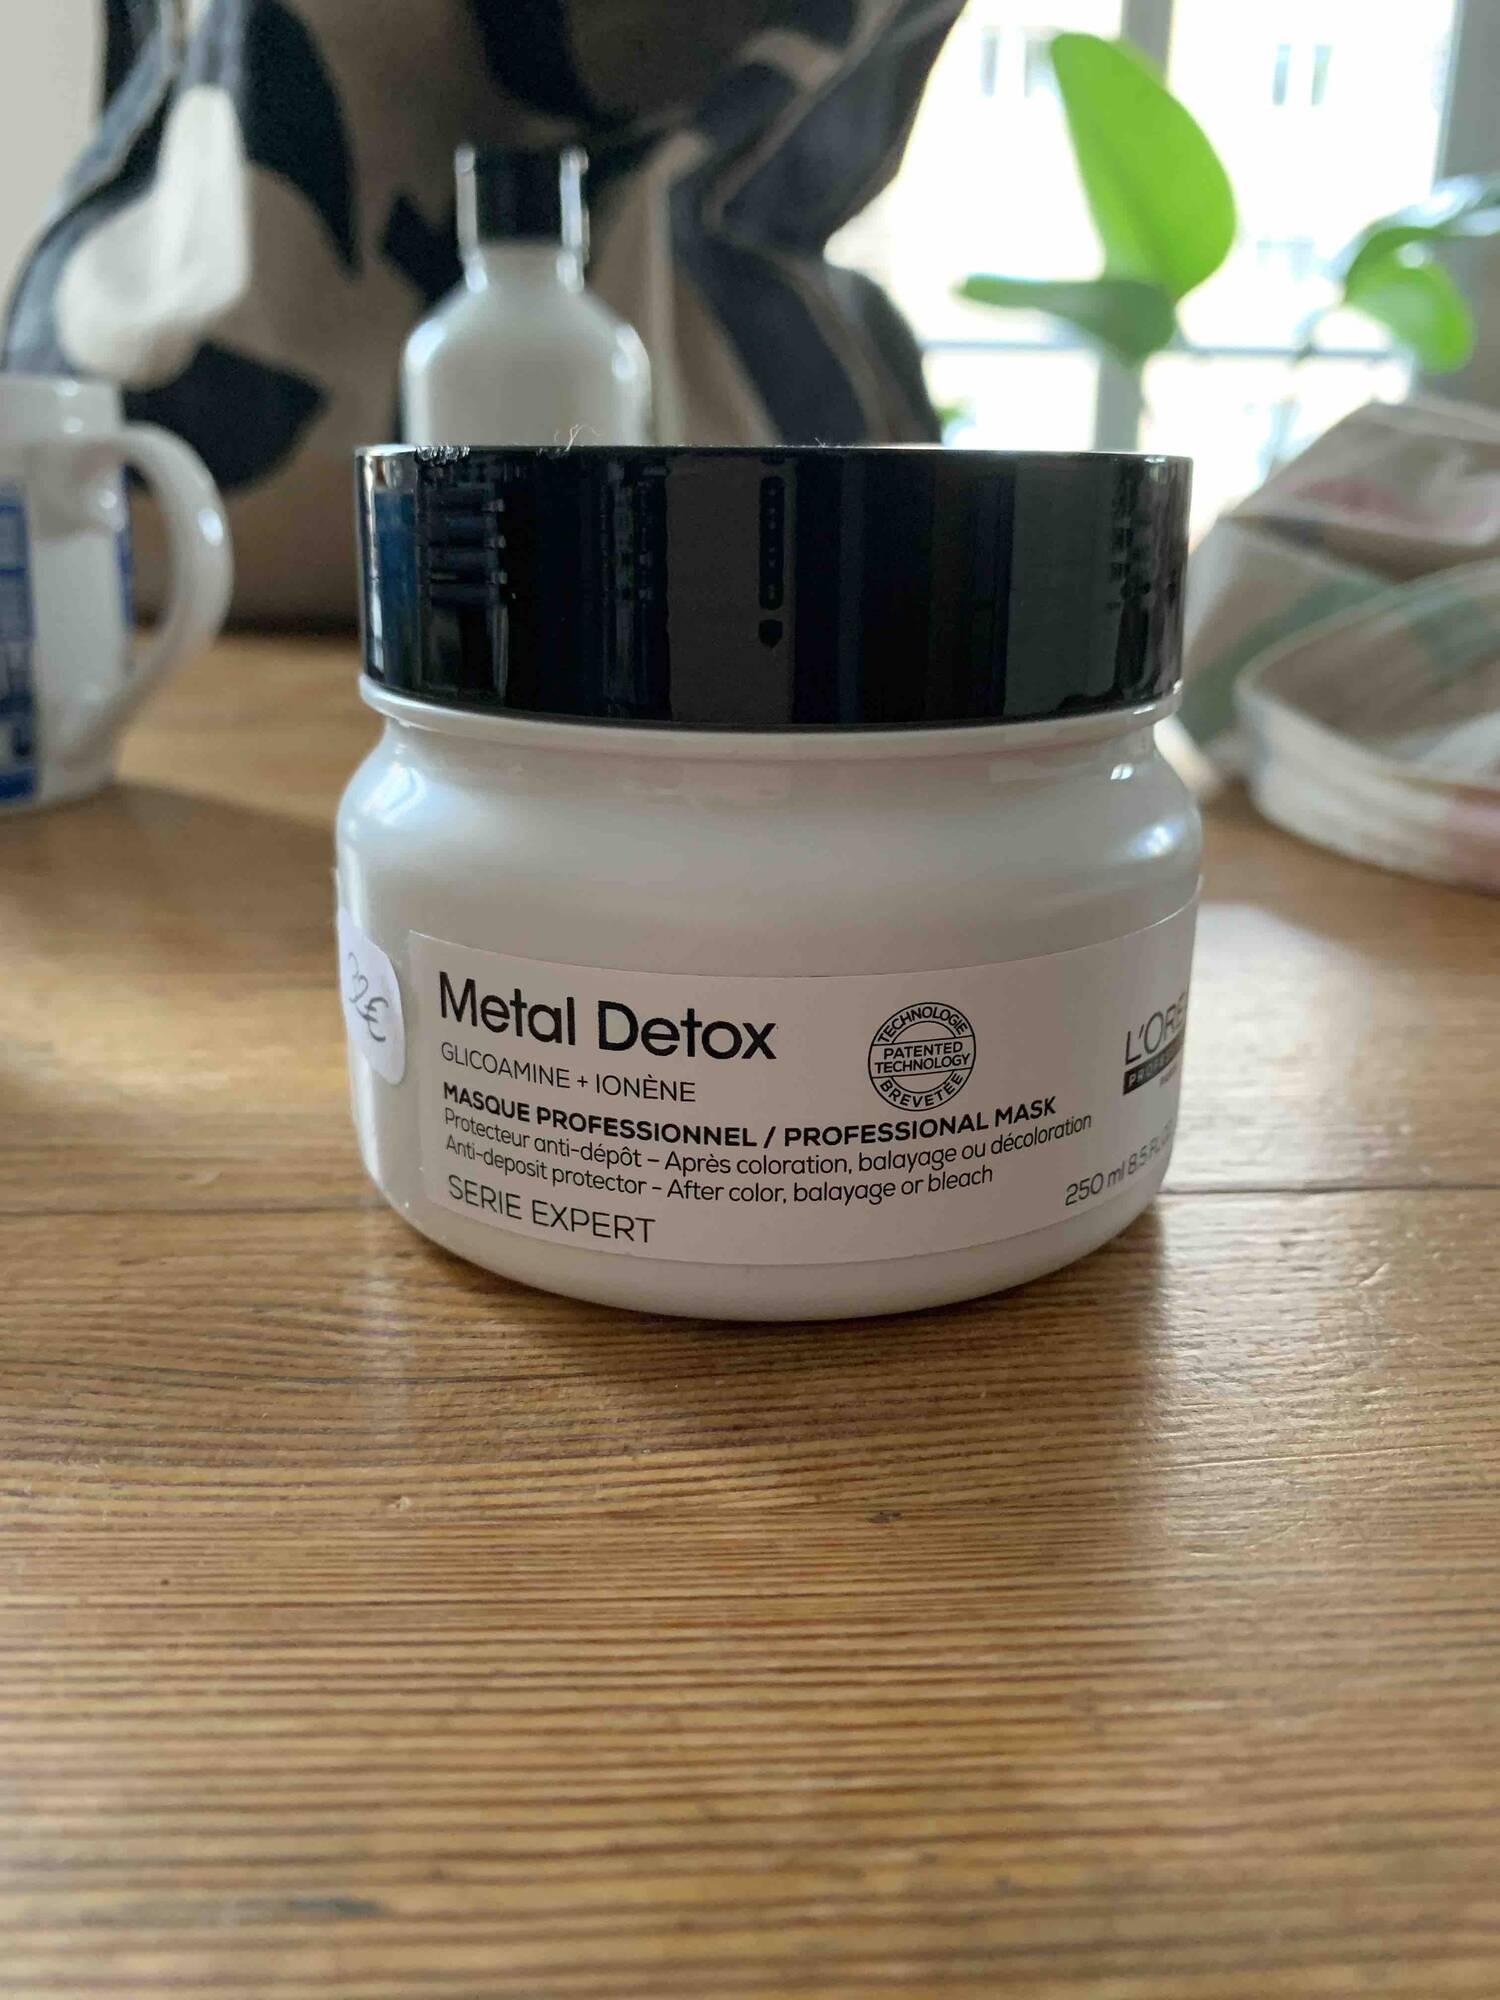 L'ORÉAL PROFESSIONNEL - Metal Detox - Masque professionnel